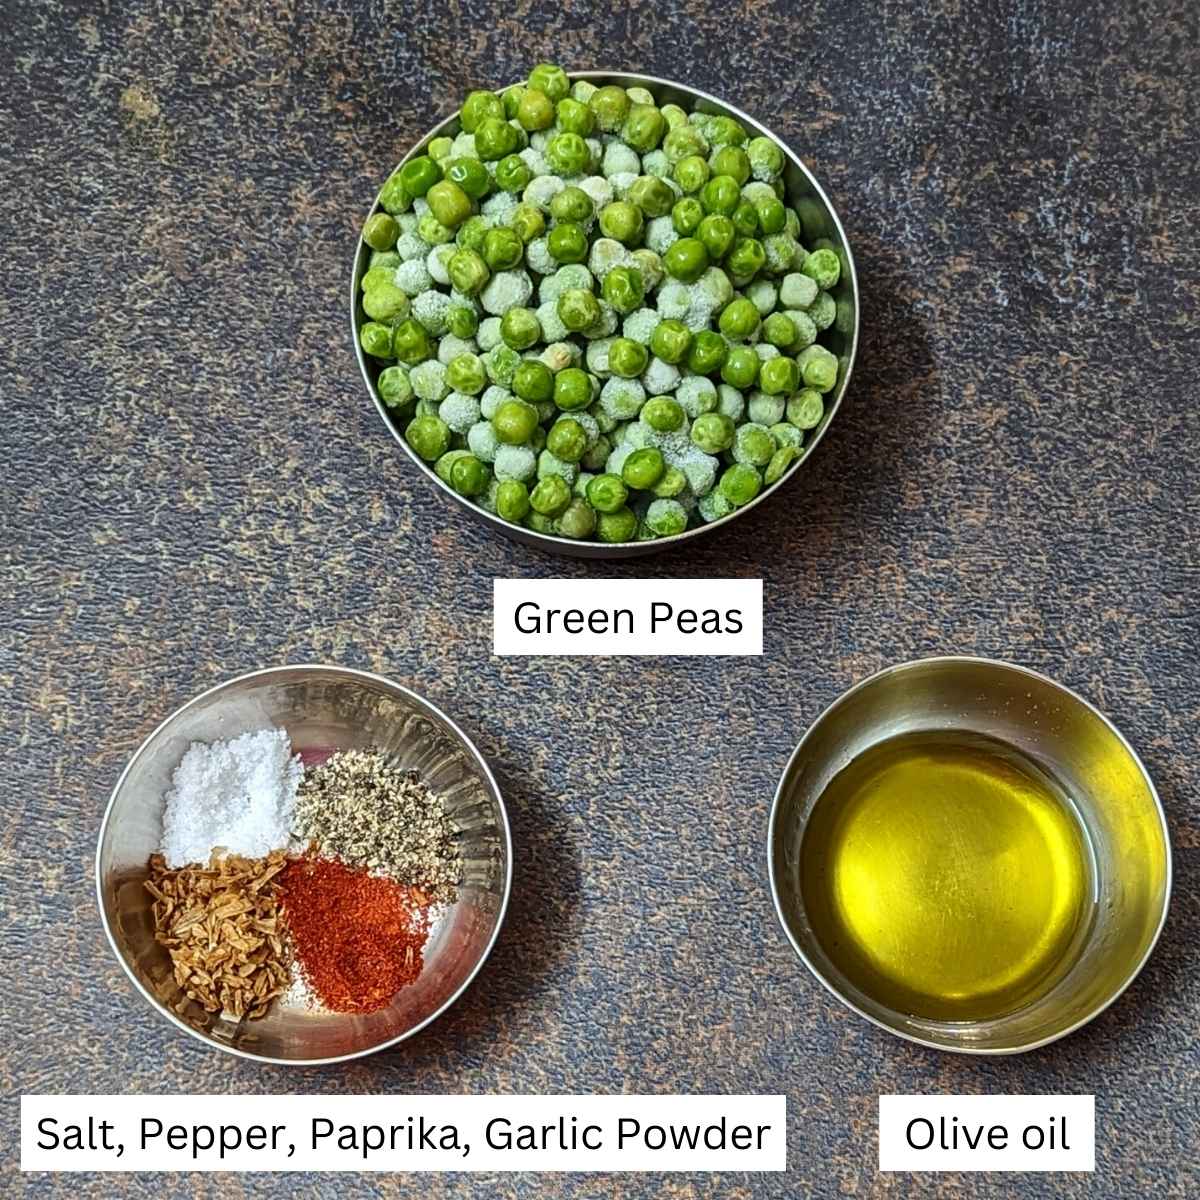 Ingredients for making crispy air fried peas: green peas, olive oil and seasonings.